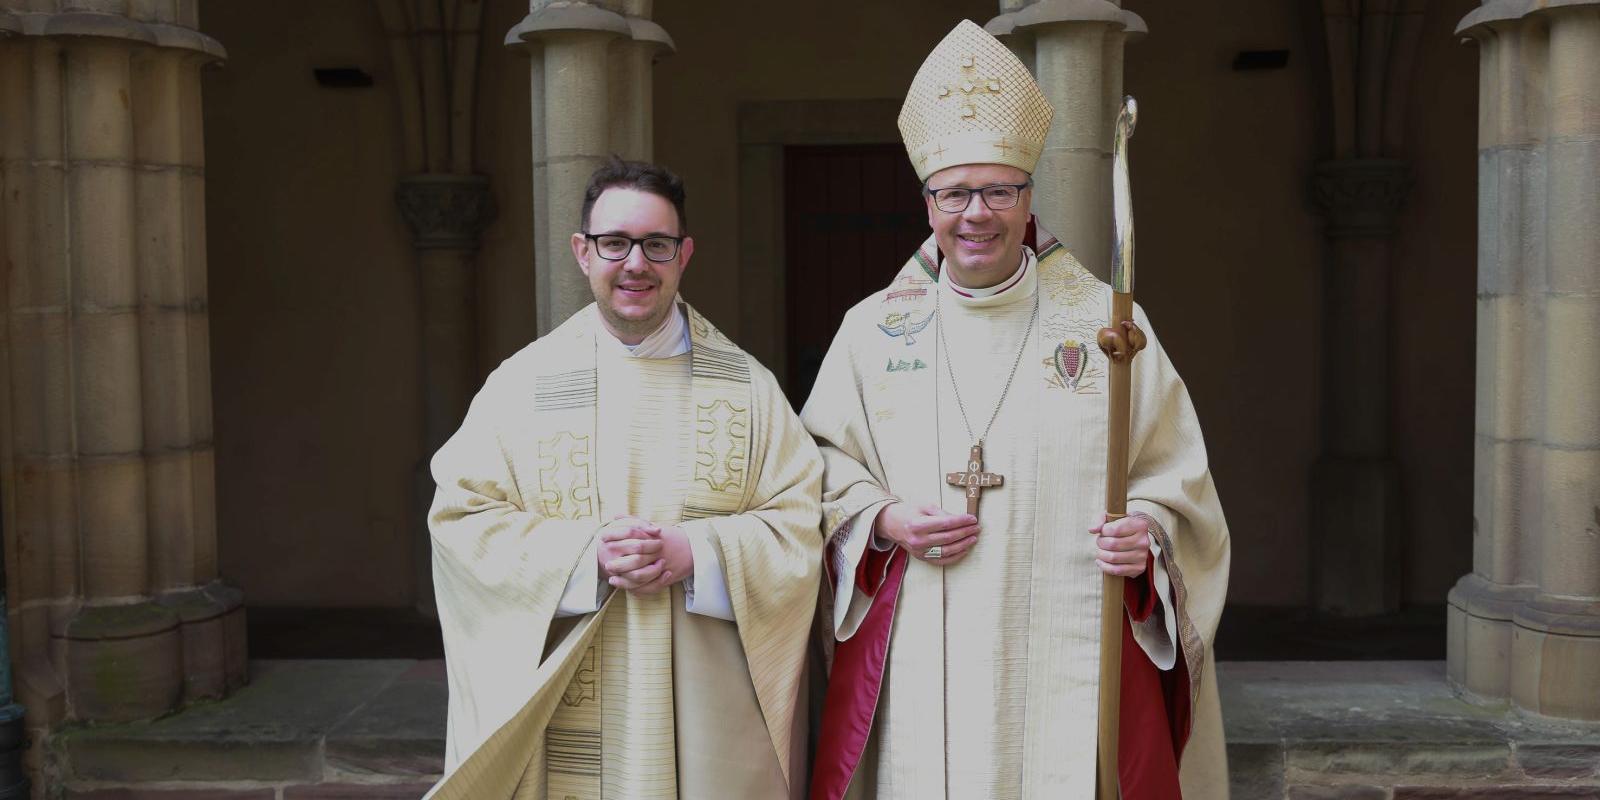 Neupriester Sebastian Kühn und Bischof Ackermann nach der Weihe